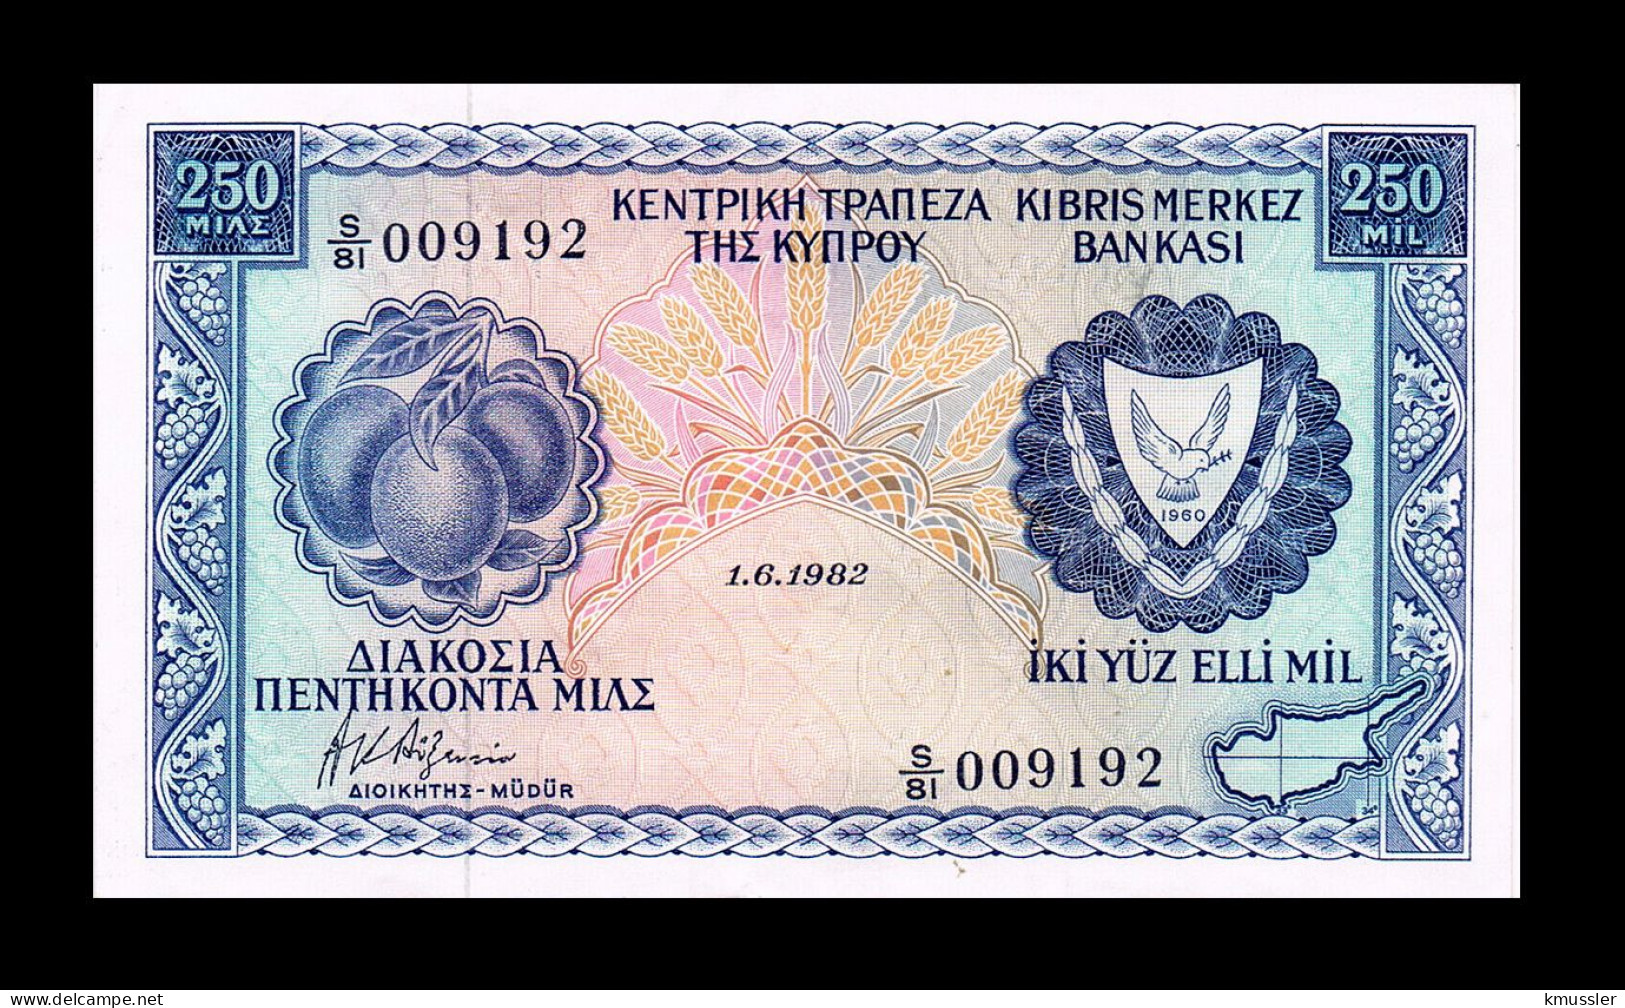 # # # Banknote Zypern (Cyprus) 250 Mils 1982 # # # - Cyprus